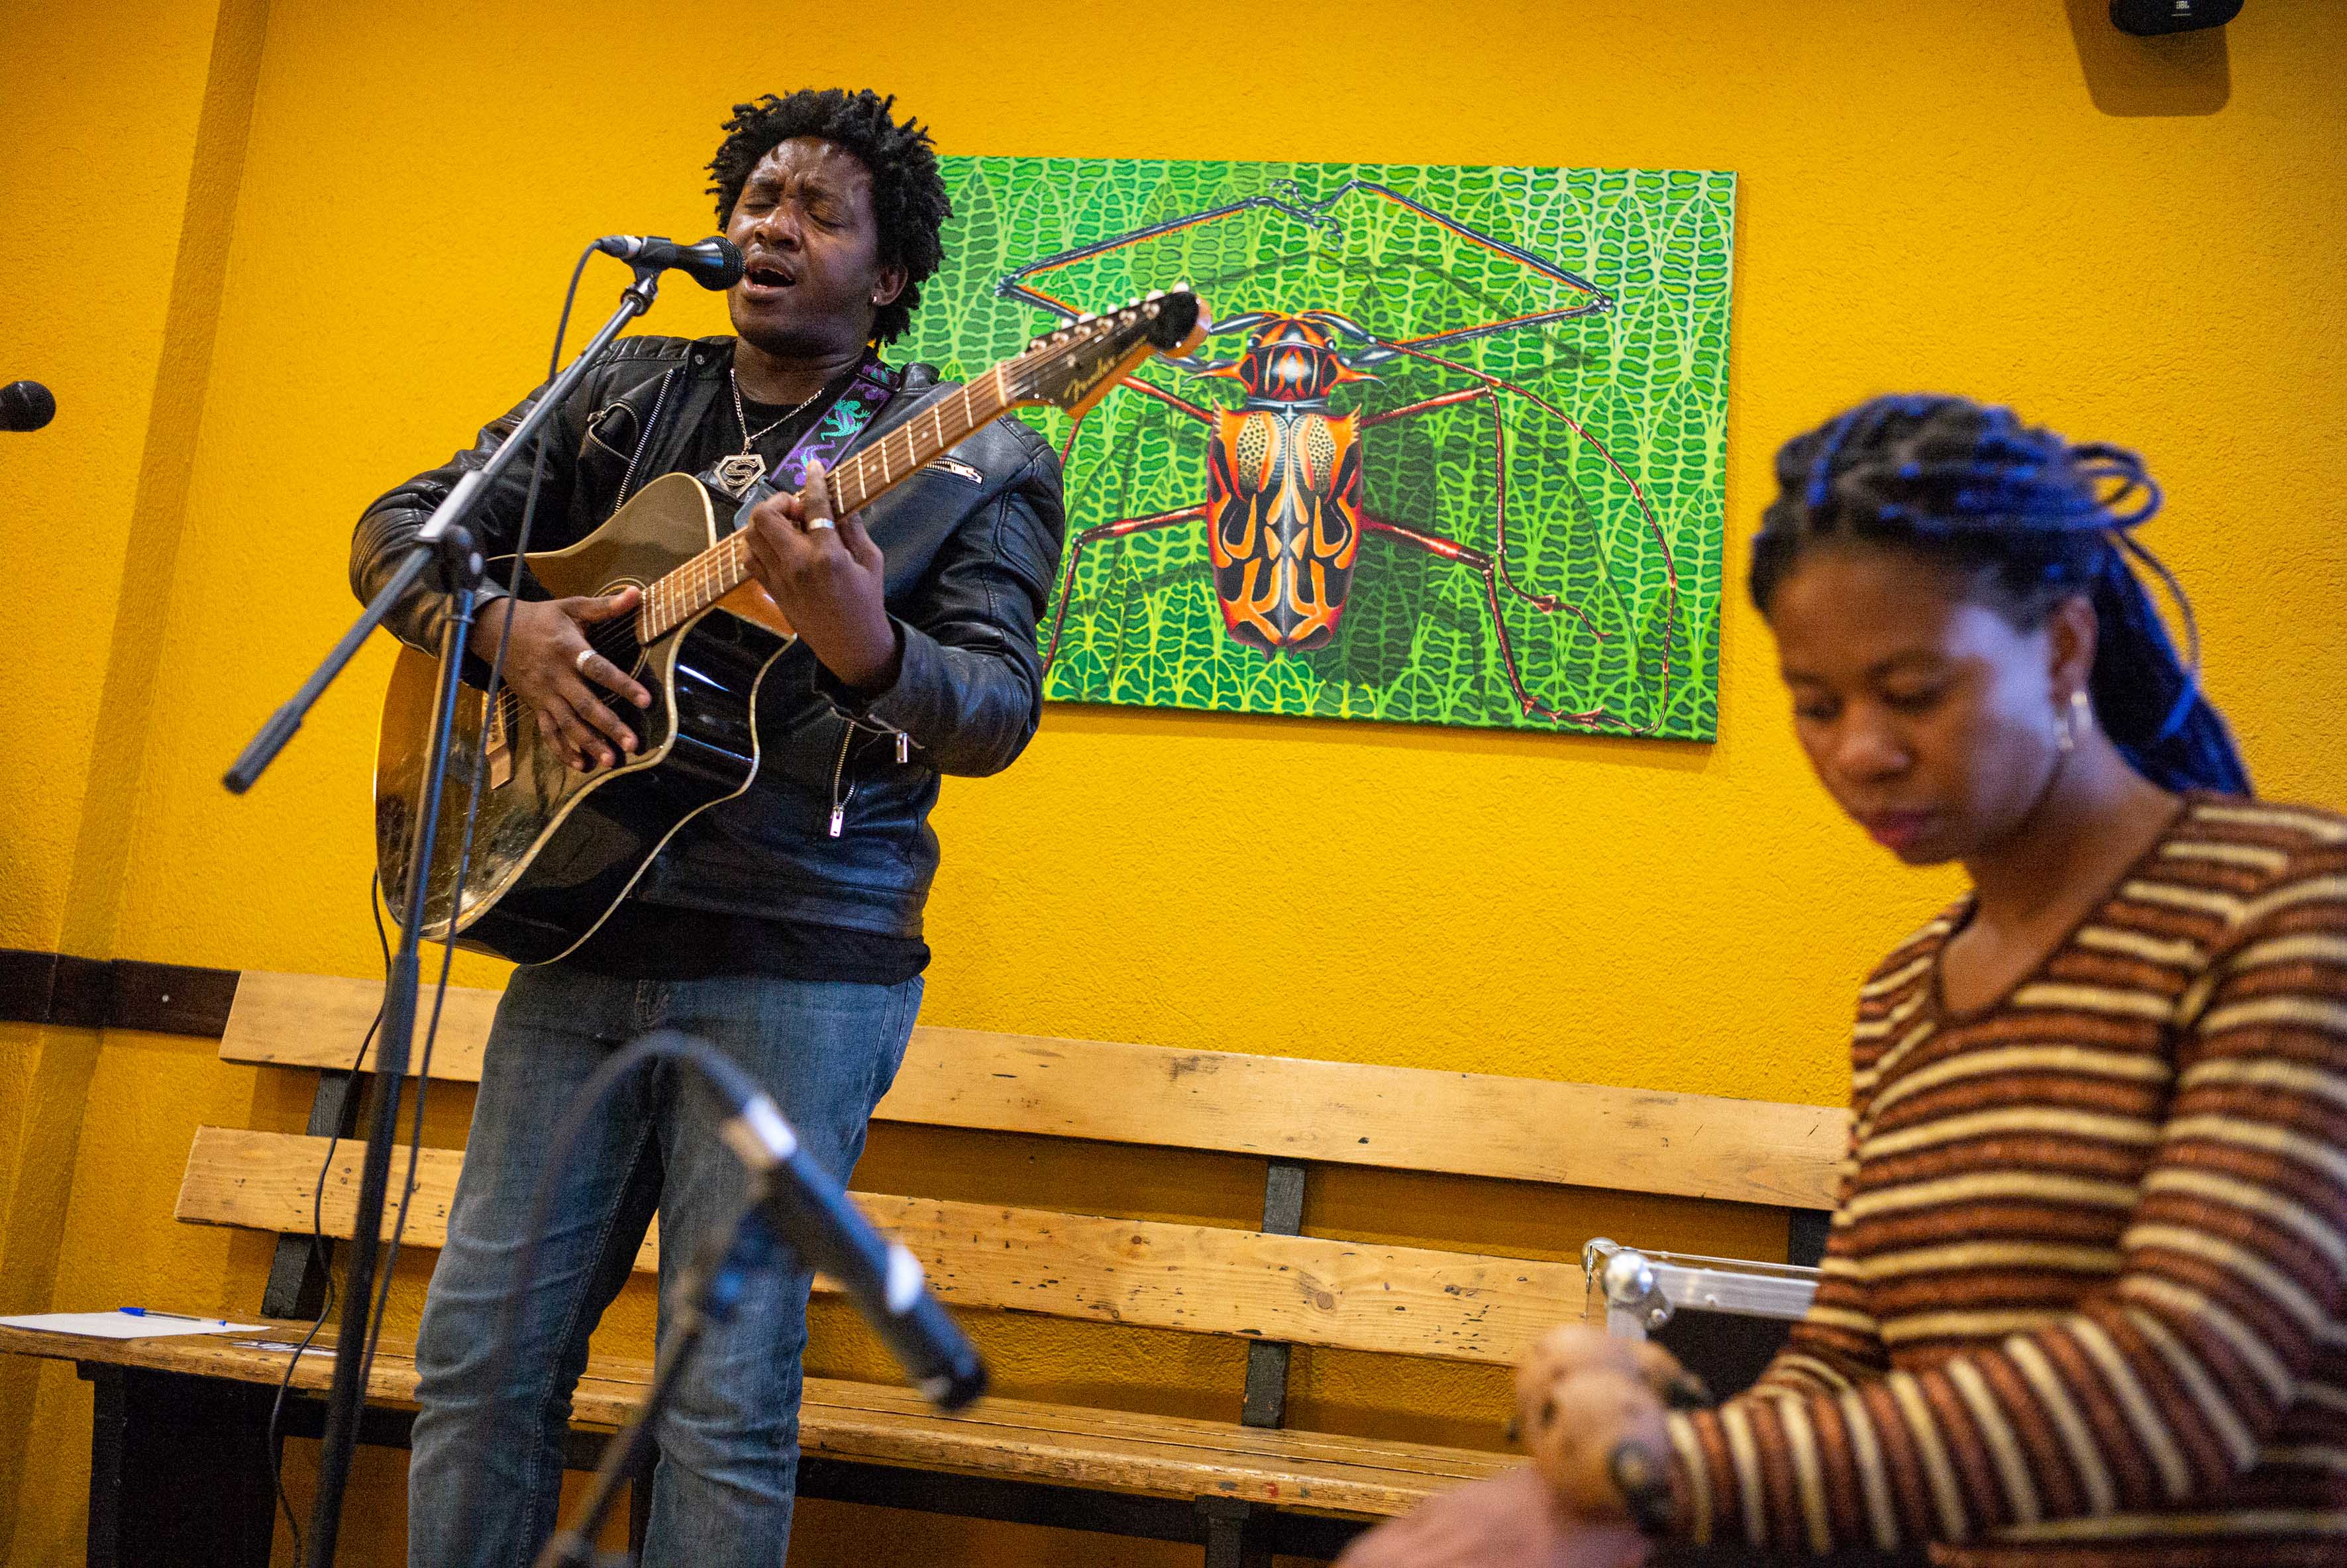 Ein Mann mit einer Gitarre singt in ein Mikrofon, neben ihm sitzt eine Frau